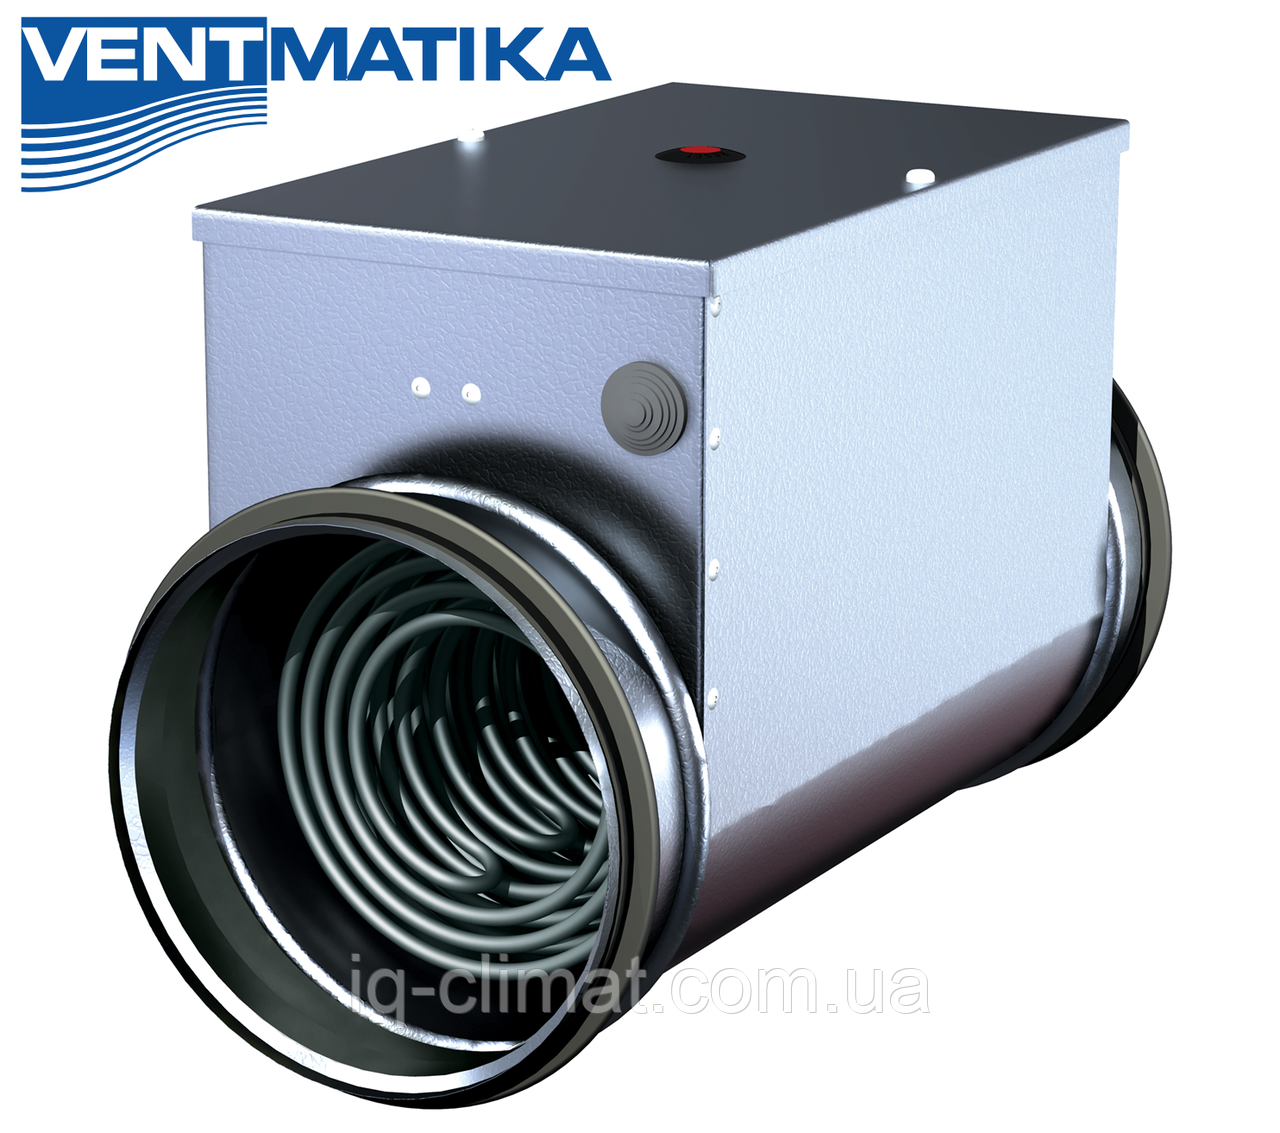 EKA 250-6,0-1f нагрівач електричний круглий 250мм 6,0кВт 230В (Ventmatika, Литва)